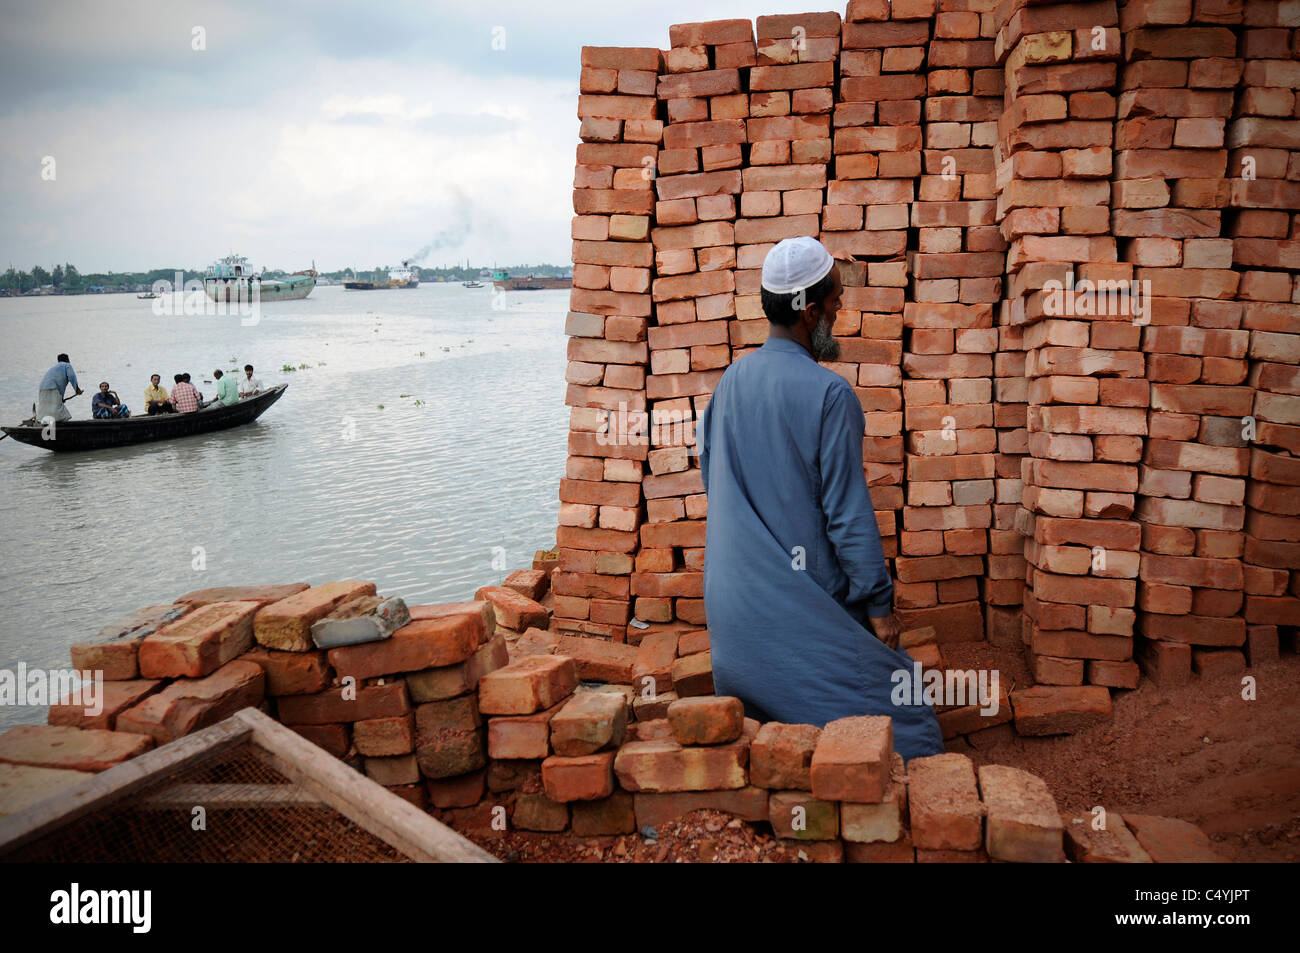 A brick kiln in Bangladesh Stock Photo